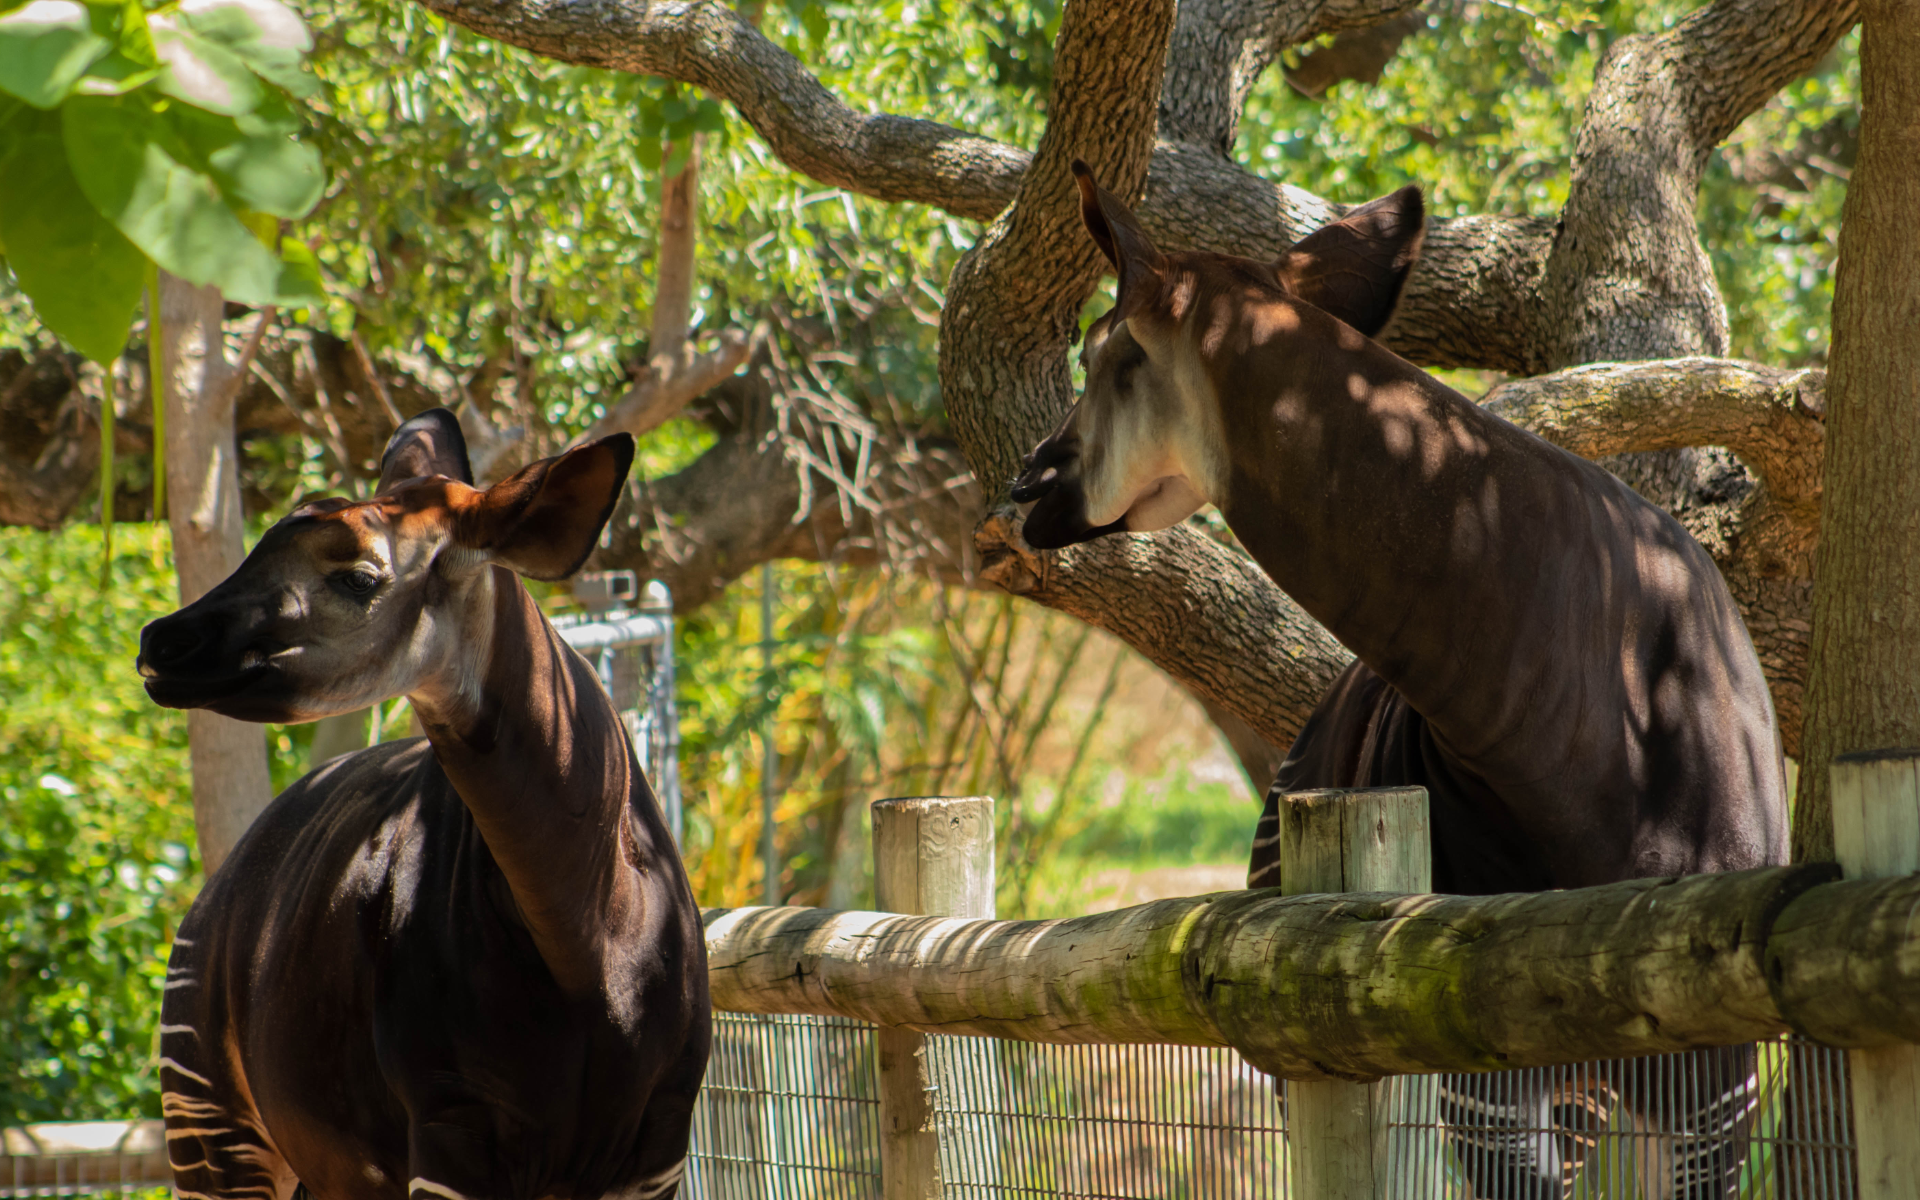 Two Okapi animals at the Oklahoma City Zoo.